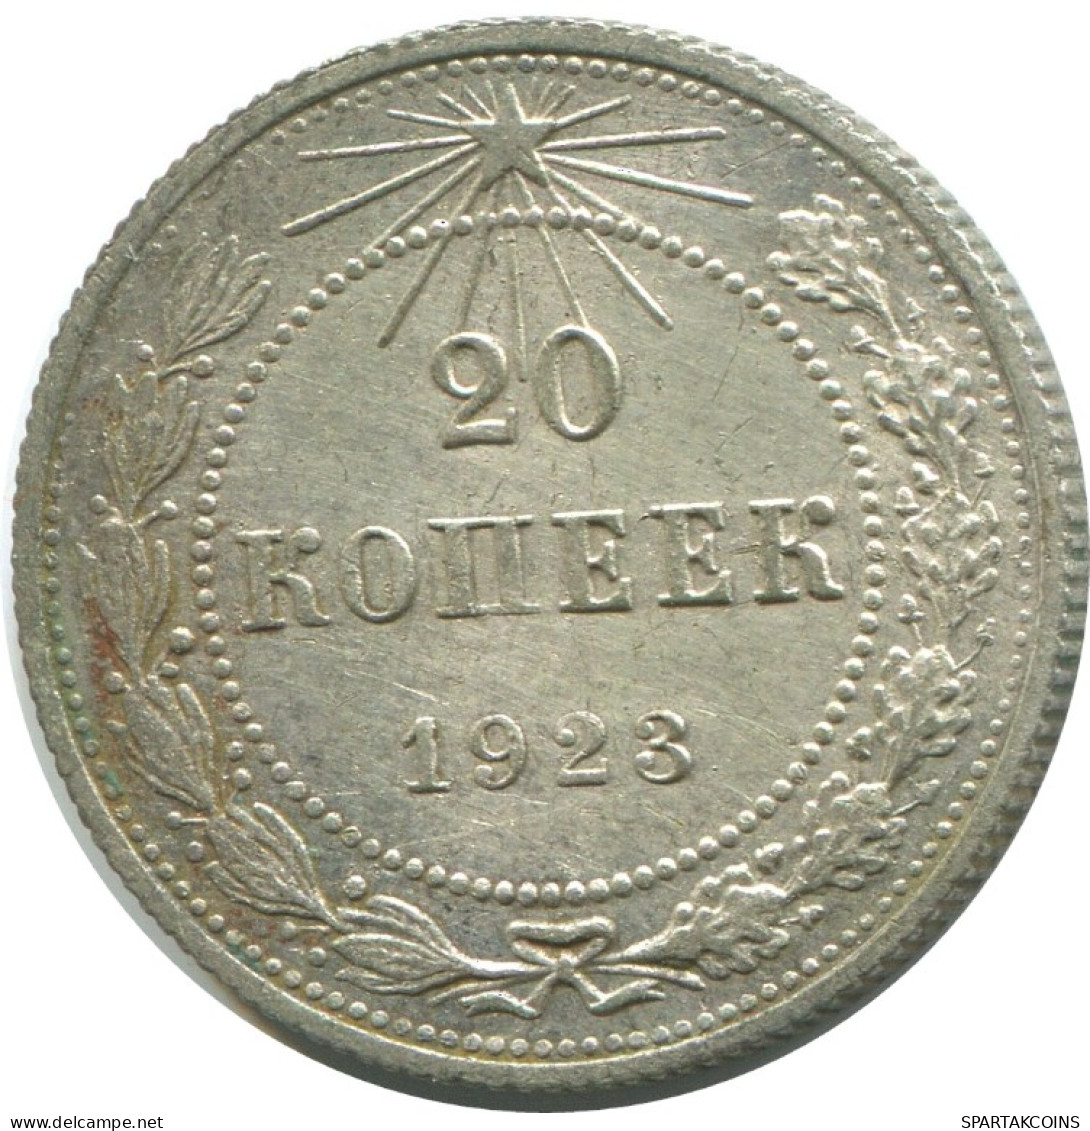 20 KOPEKS 1923 RUSSLAND RUSSIA RSFSR SILBER Münze HIGH GRADE #AF523.4.D.A - Russia